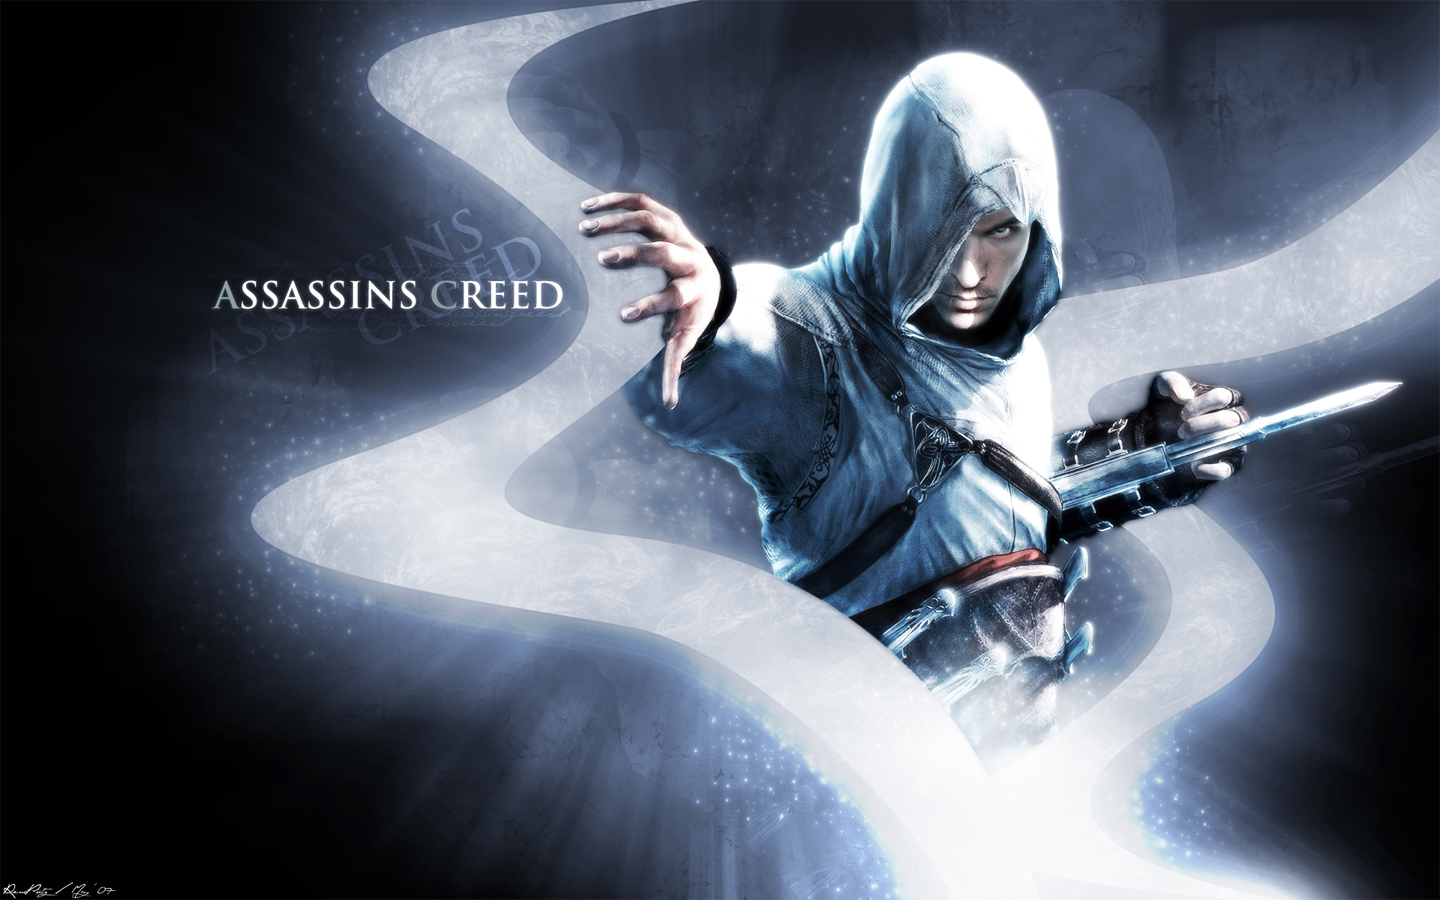 Fond d'ecran Assassin Creed jeux